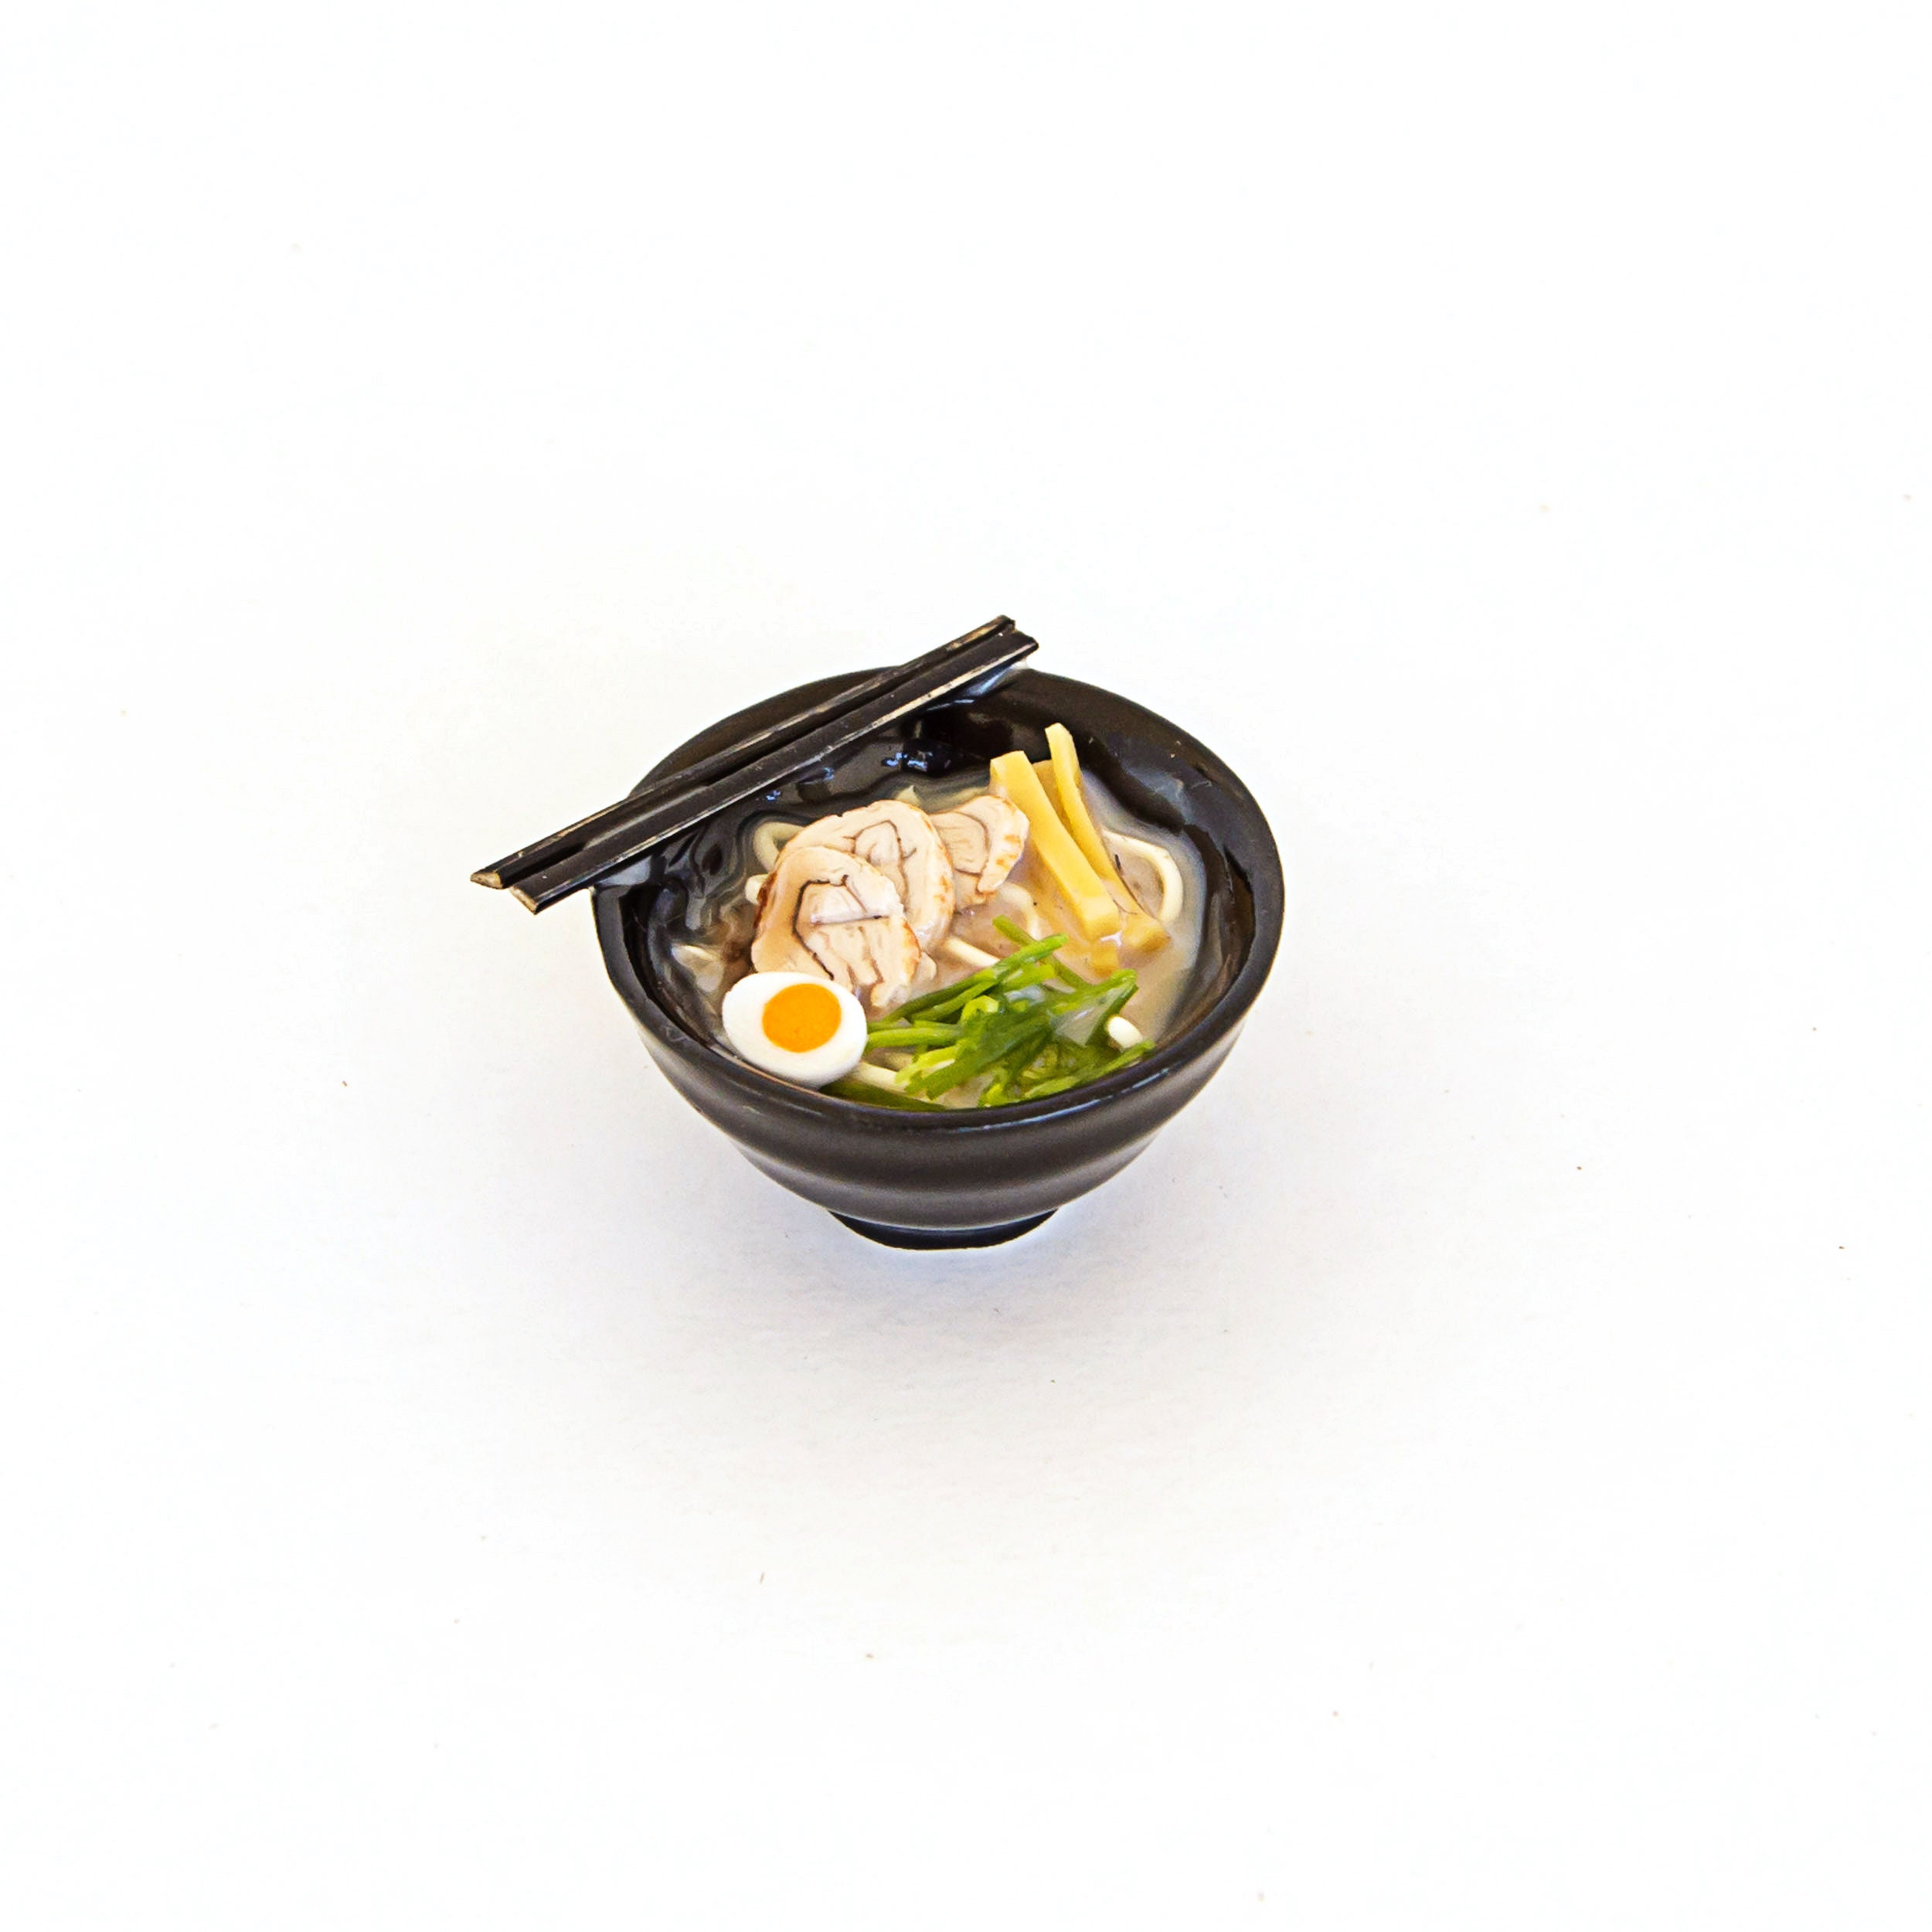 Miniature Noodles Soup Dollhouse Food